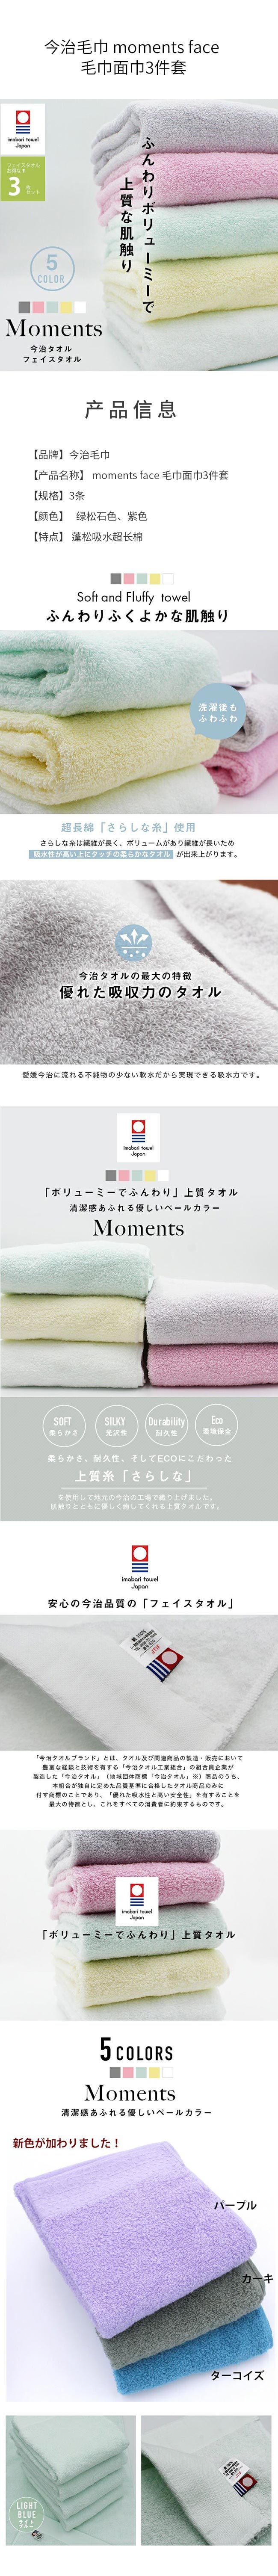 【日本直邮】今治毛巾 moments face 毛巾面巾3件套 绿松石色3条